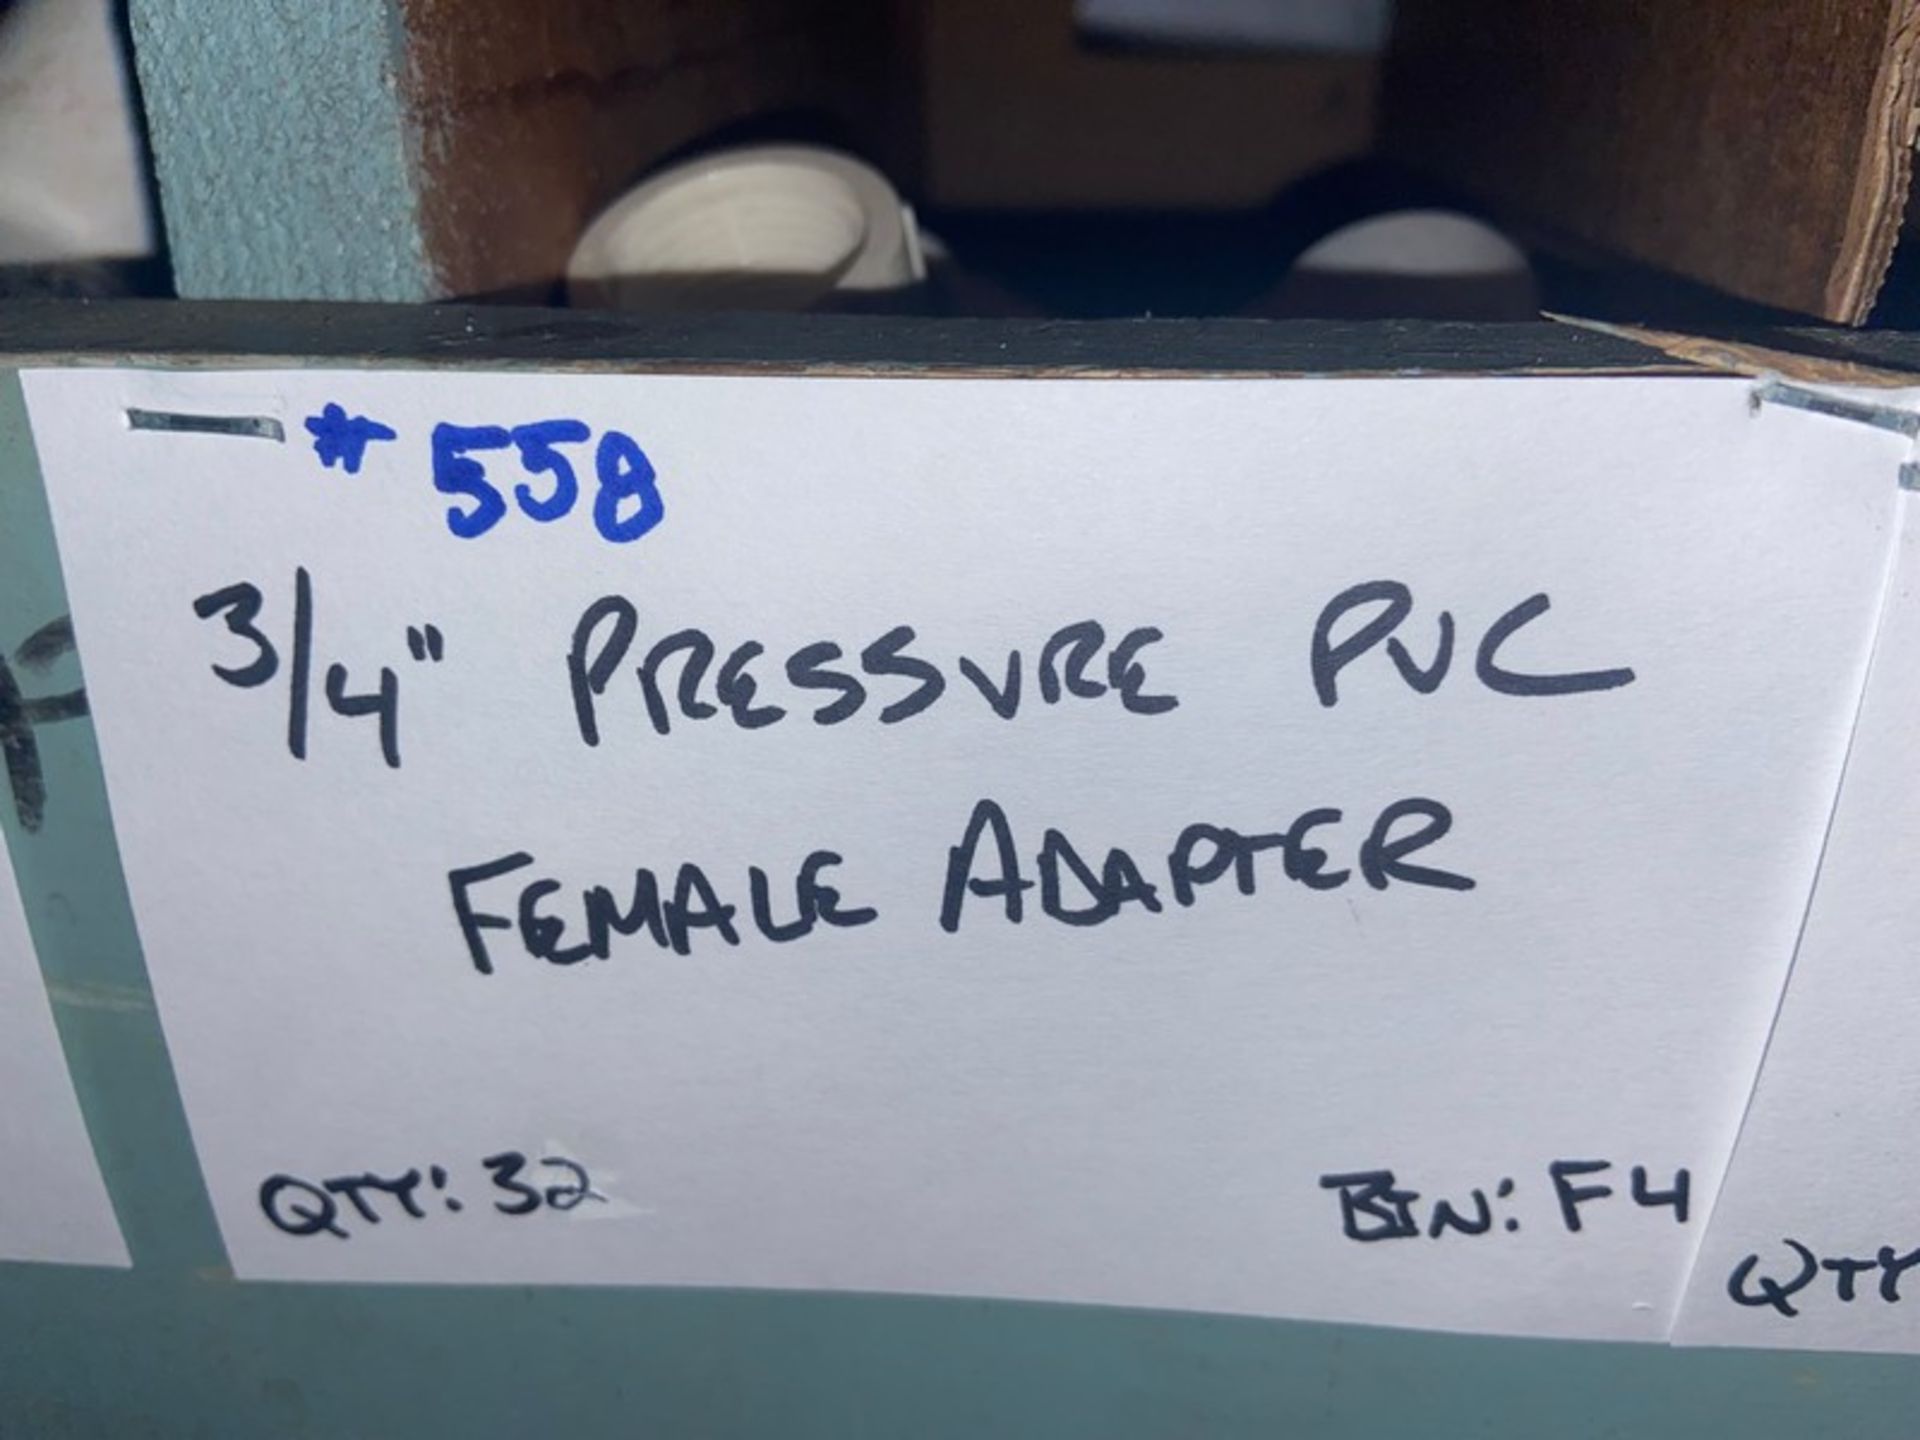 (32) 3/4” Pressure PVC Female Adapter (Bin:F4), Includes (9) 3/4” Pressure PVC Male Adapter (Bin: - Image 9 of 20